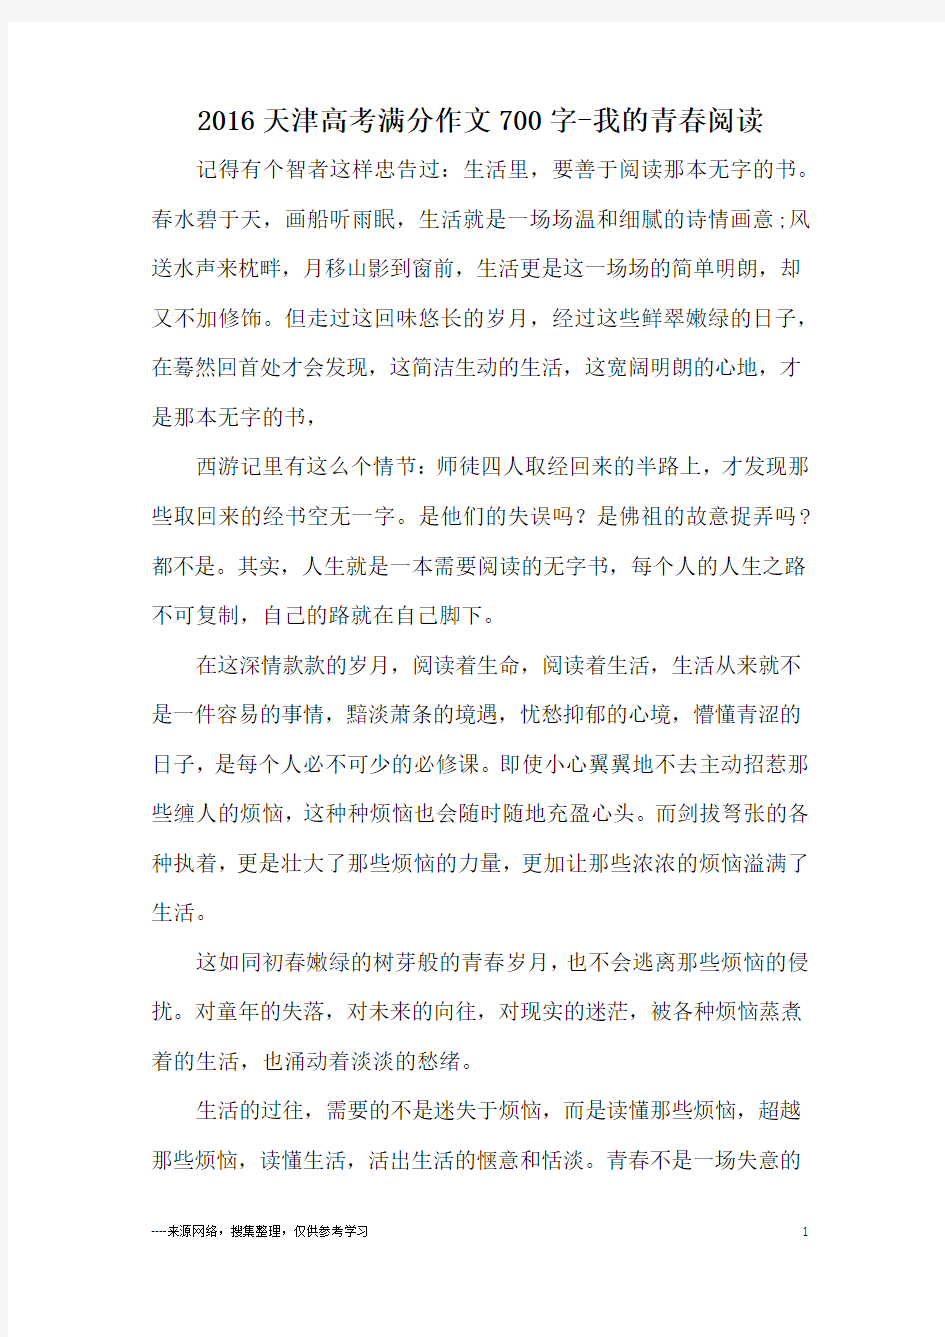 2016天津高考满分作文700字-我的青春阅读